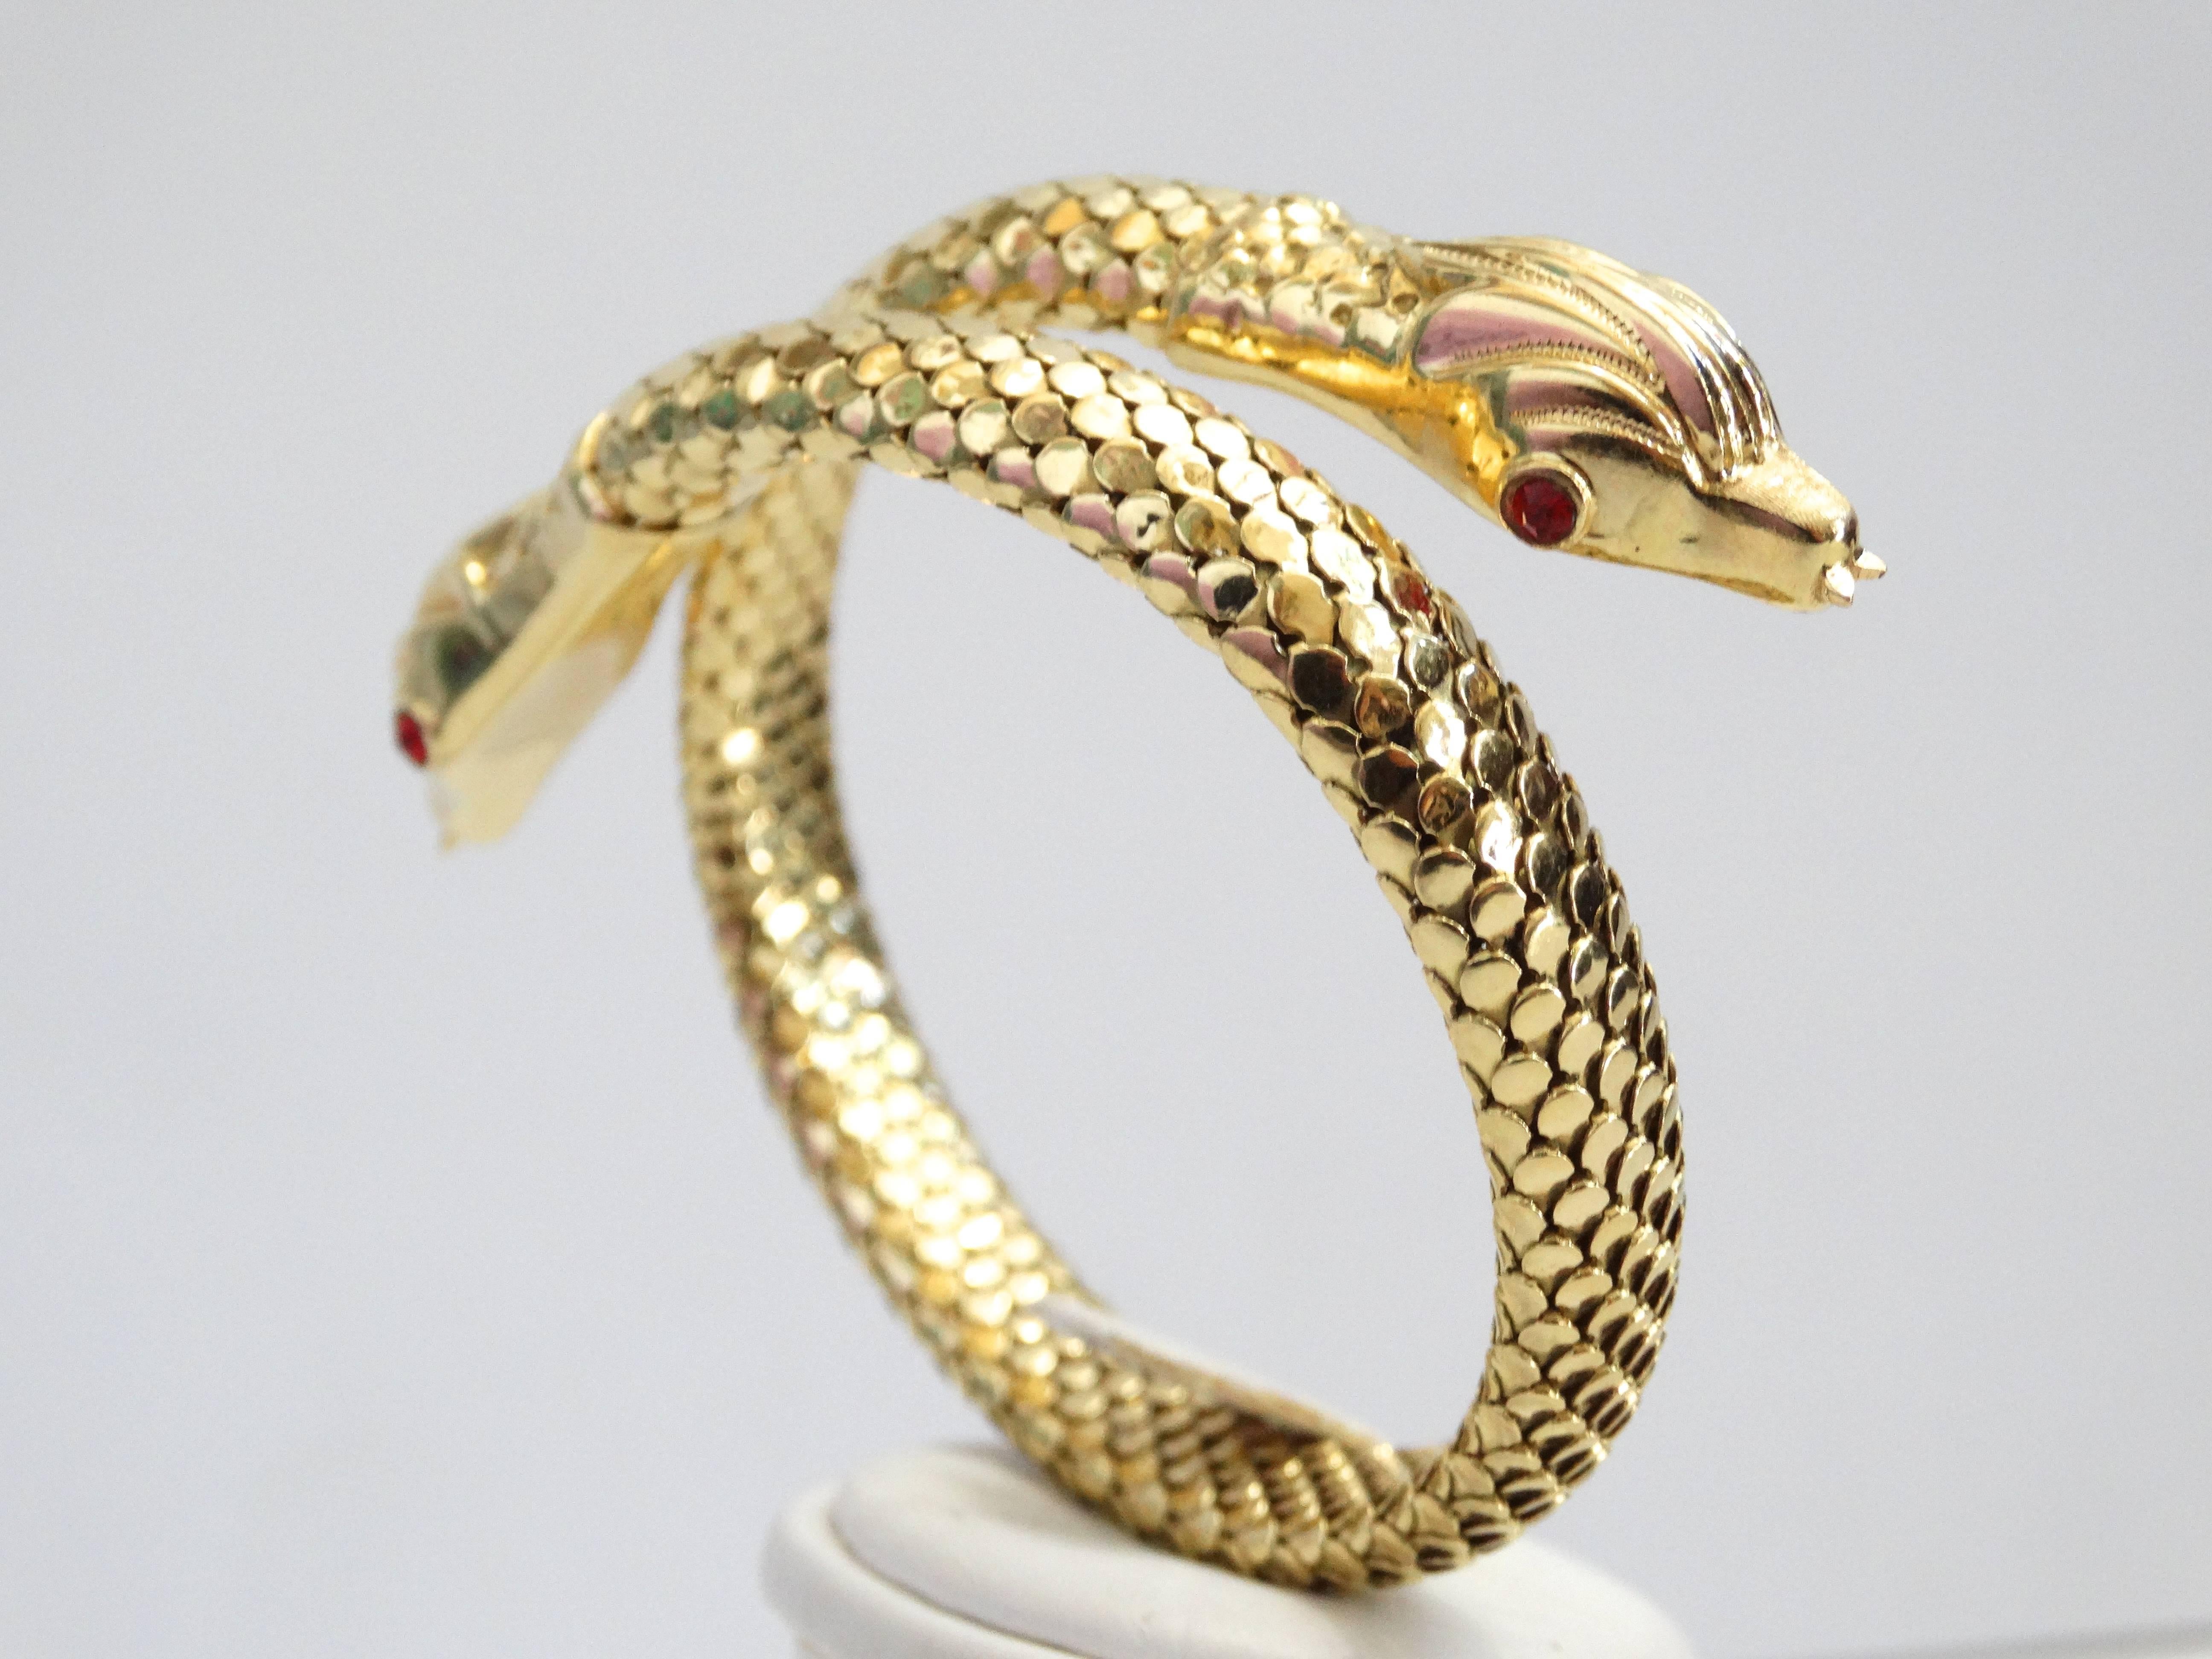 Ein schönes und ungewöhnliches Schlangenarmband aus der Mitte des Jahrhunderts. Die aus 18 Karat Gelbgold gefertigte Doppelschlange schlängelt sich einmal um das Handgelenk. Der Körper ist mit kleinen Goldplättchen strukturiert, die zusammengesetzt